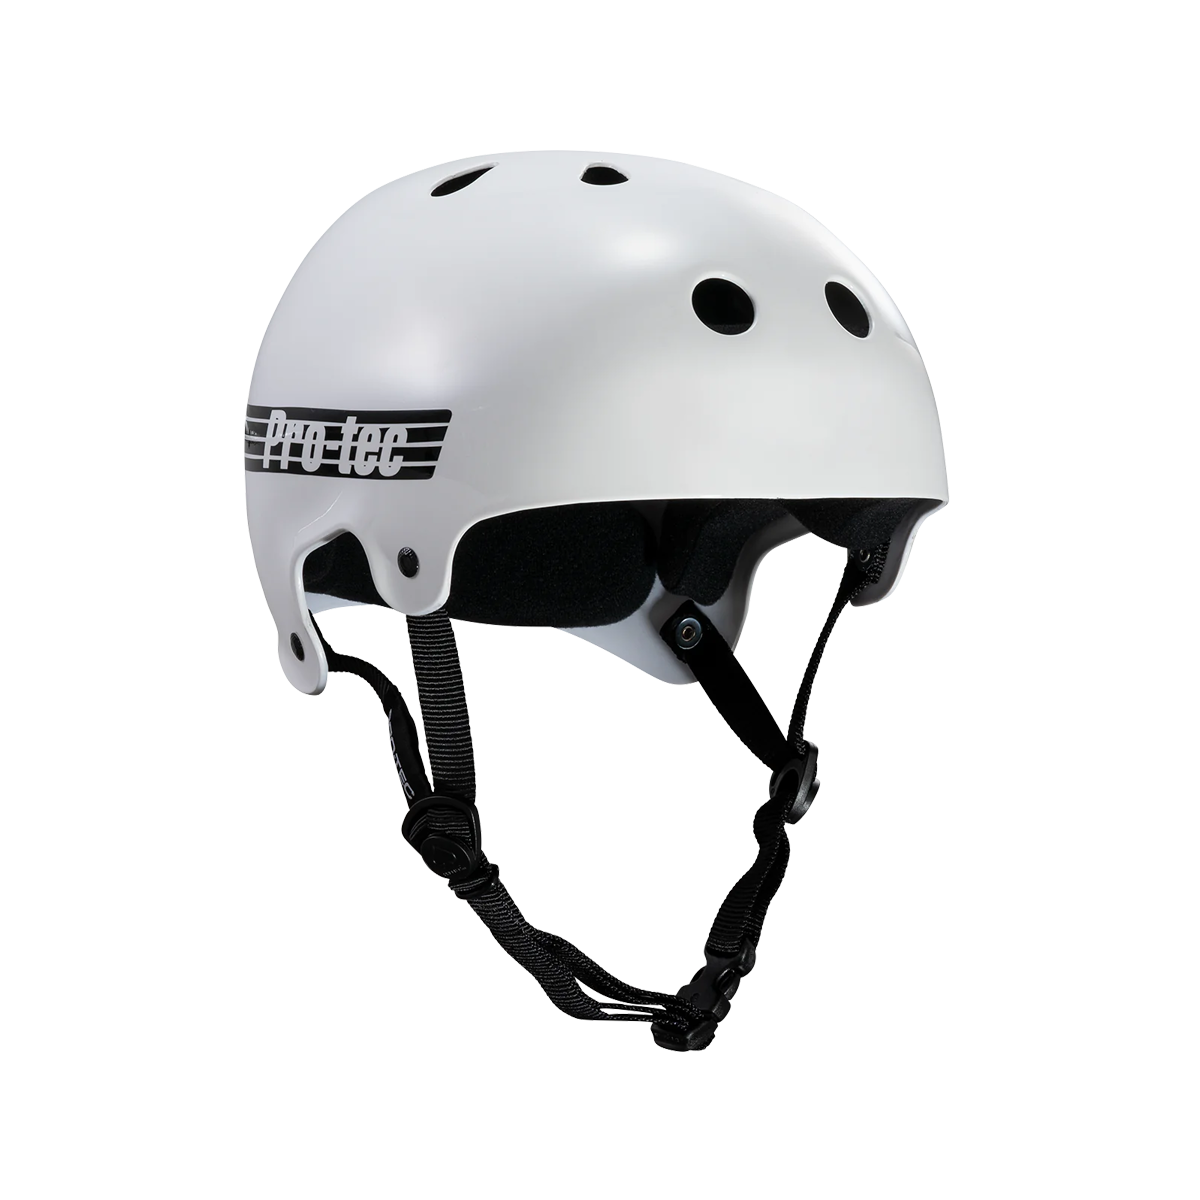 Pro Tec Old School Skate Helmet - Gloss White